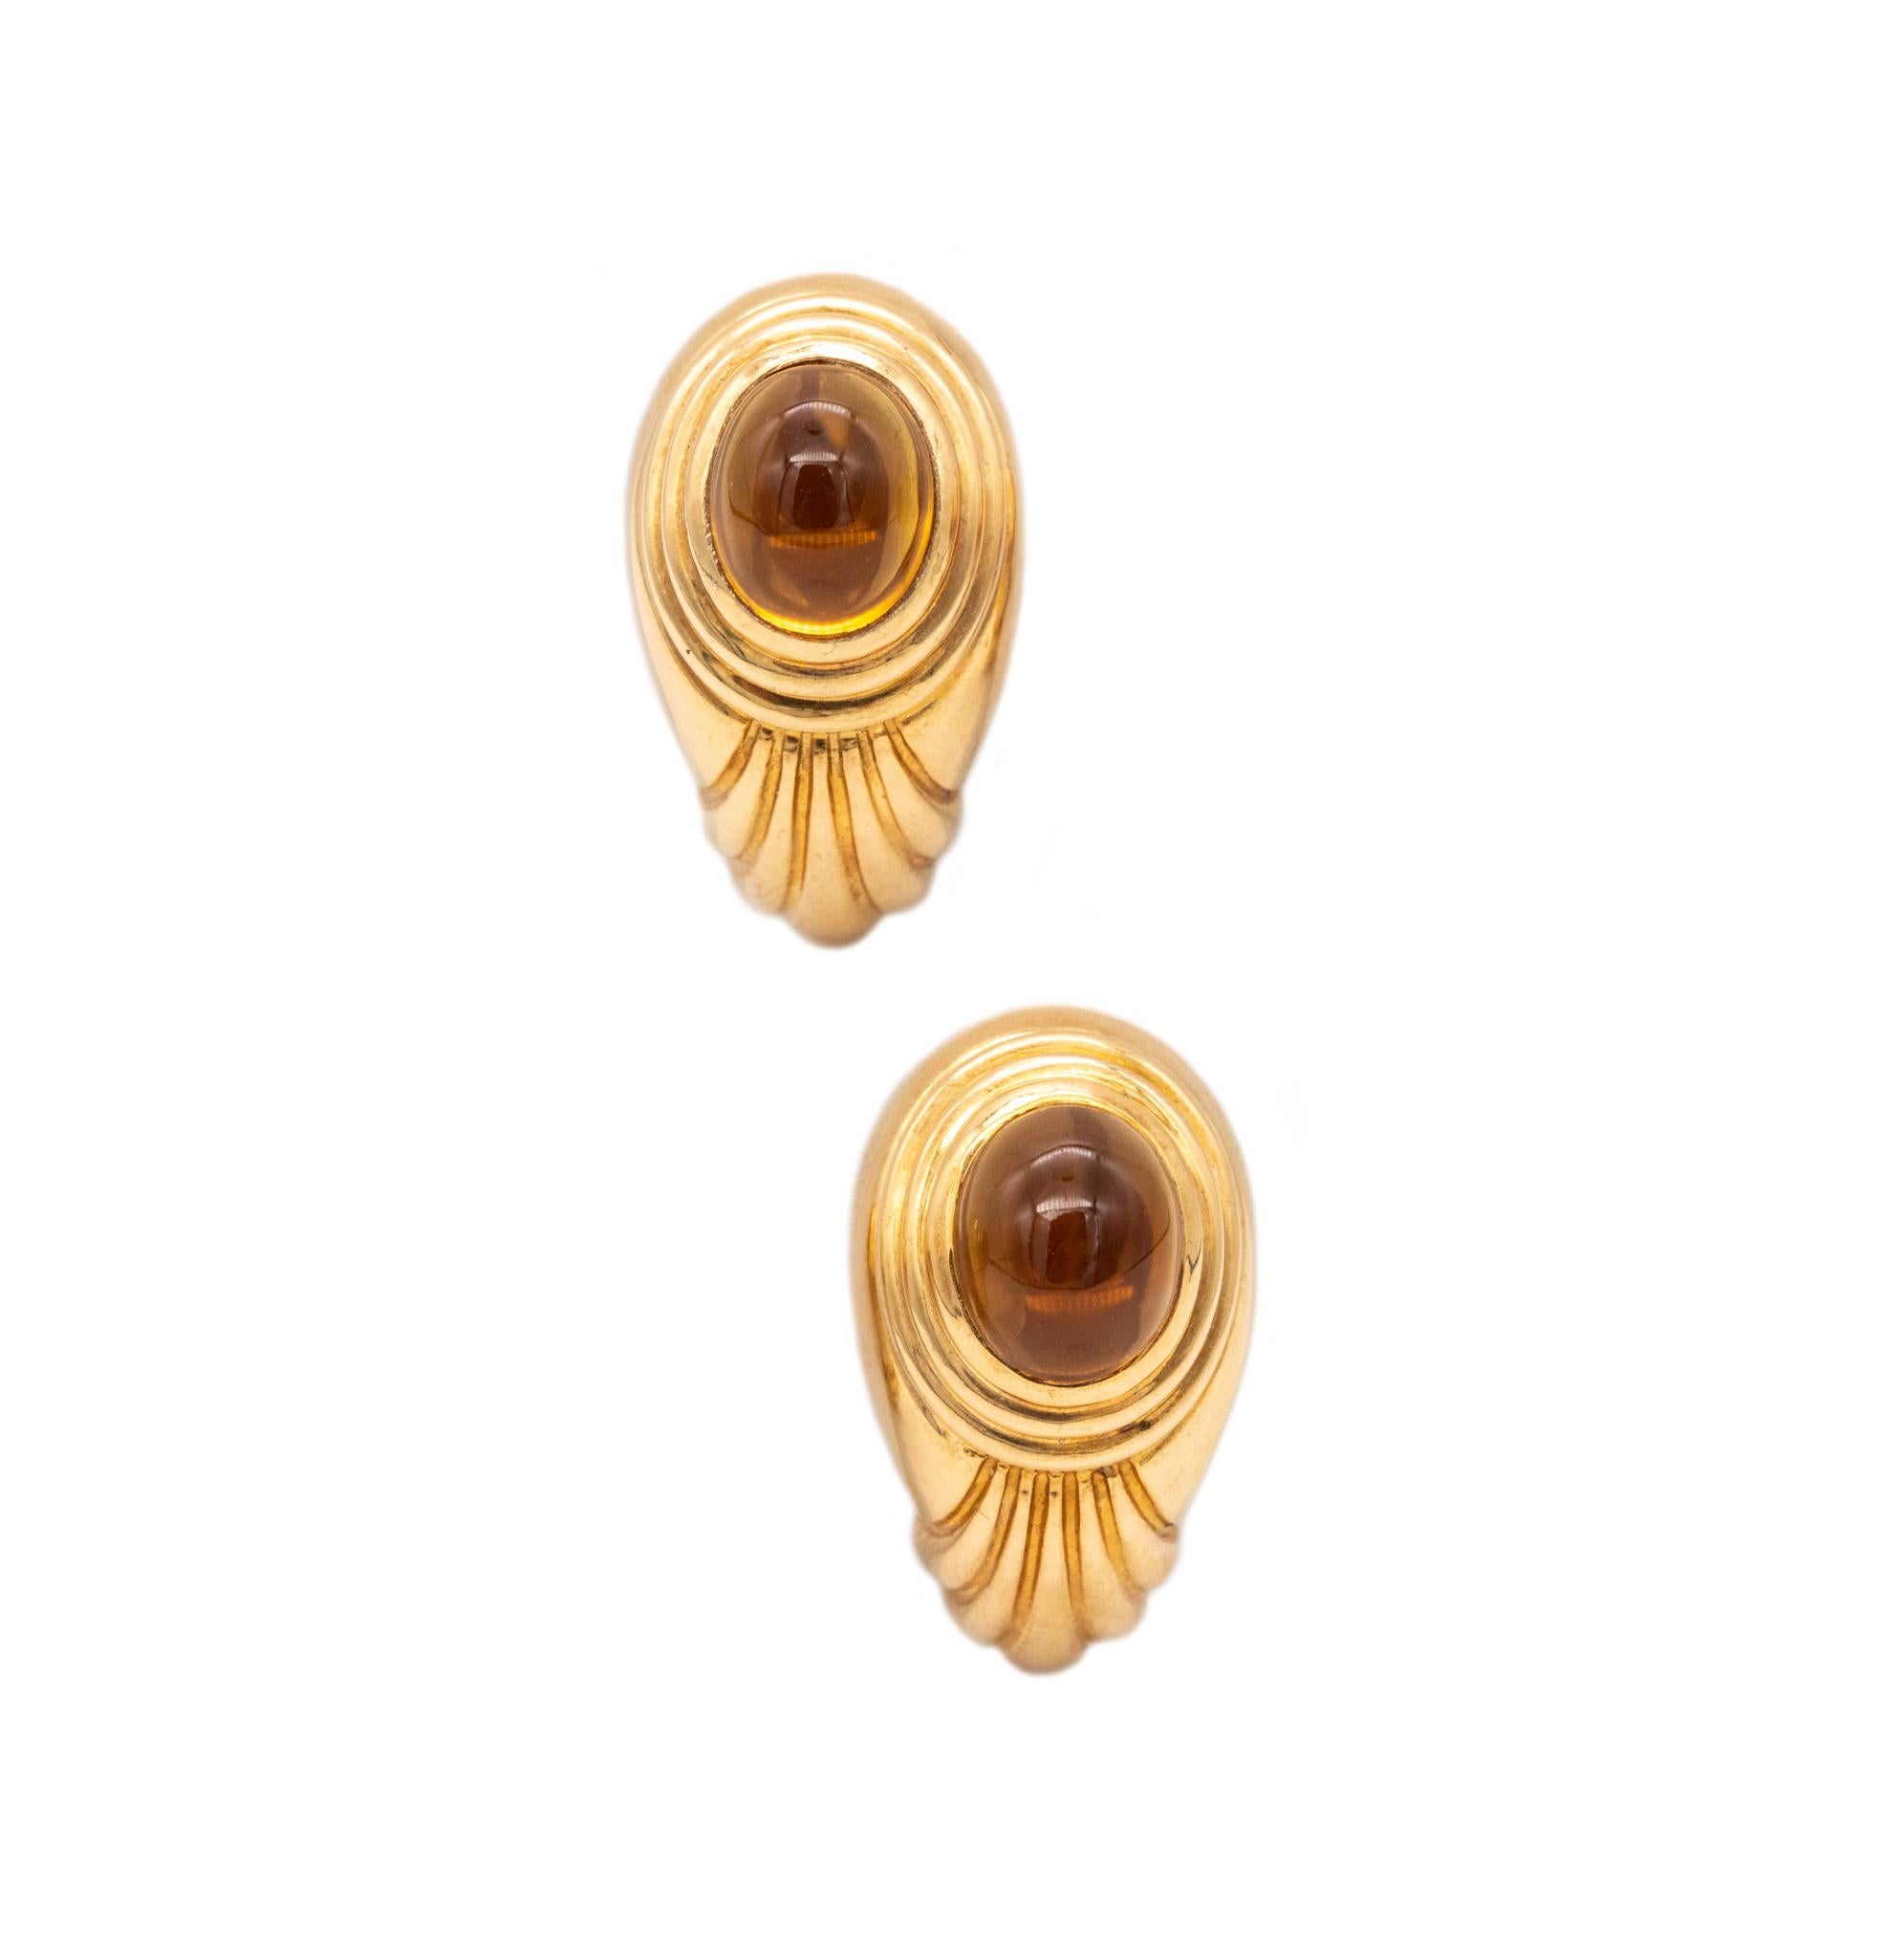 Boucles d'oreilles Jaipur conçues par Boucheron.

Une paire de boucles d'oreilles classique réalisée par la maison Boucheron à Paris en France en or jaune massif 18 carats avec des motifs déco. Ils sont dotés d'un dos oméga pour la fixation des